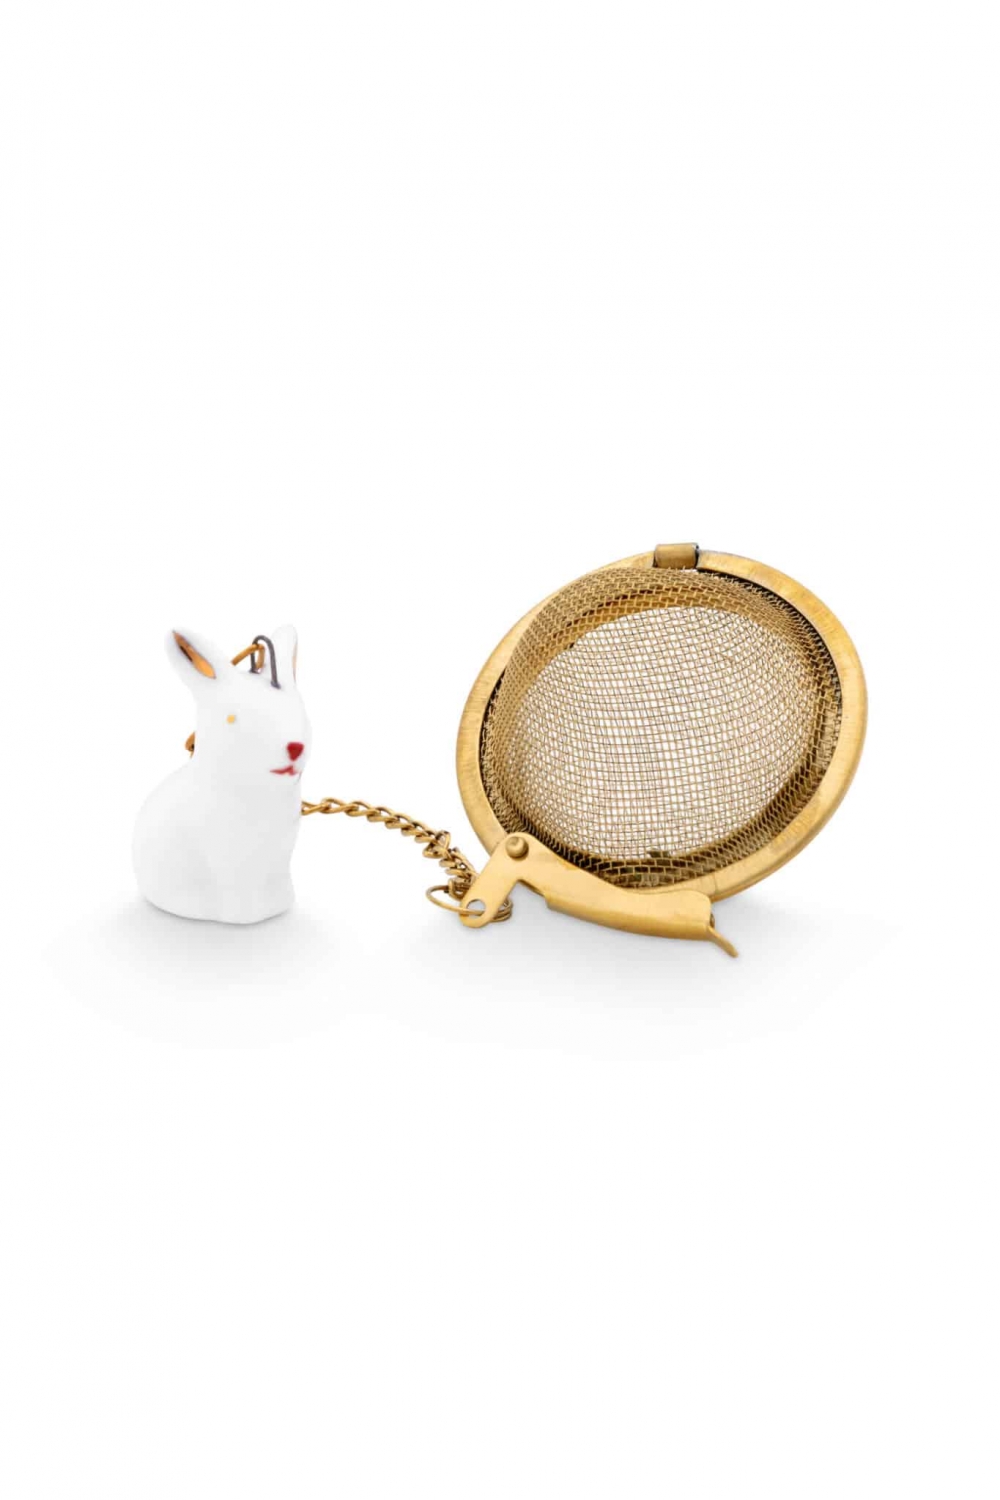 En liten, søt hare i porselen med tesil i gull. Kommer i gaveeske. Måler 6 cm. 